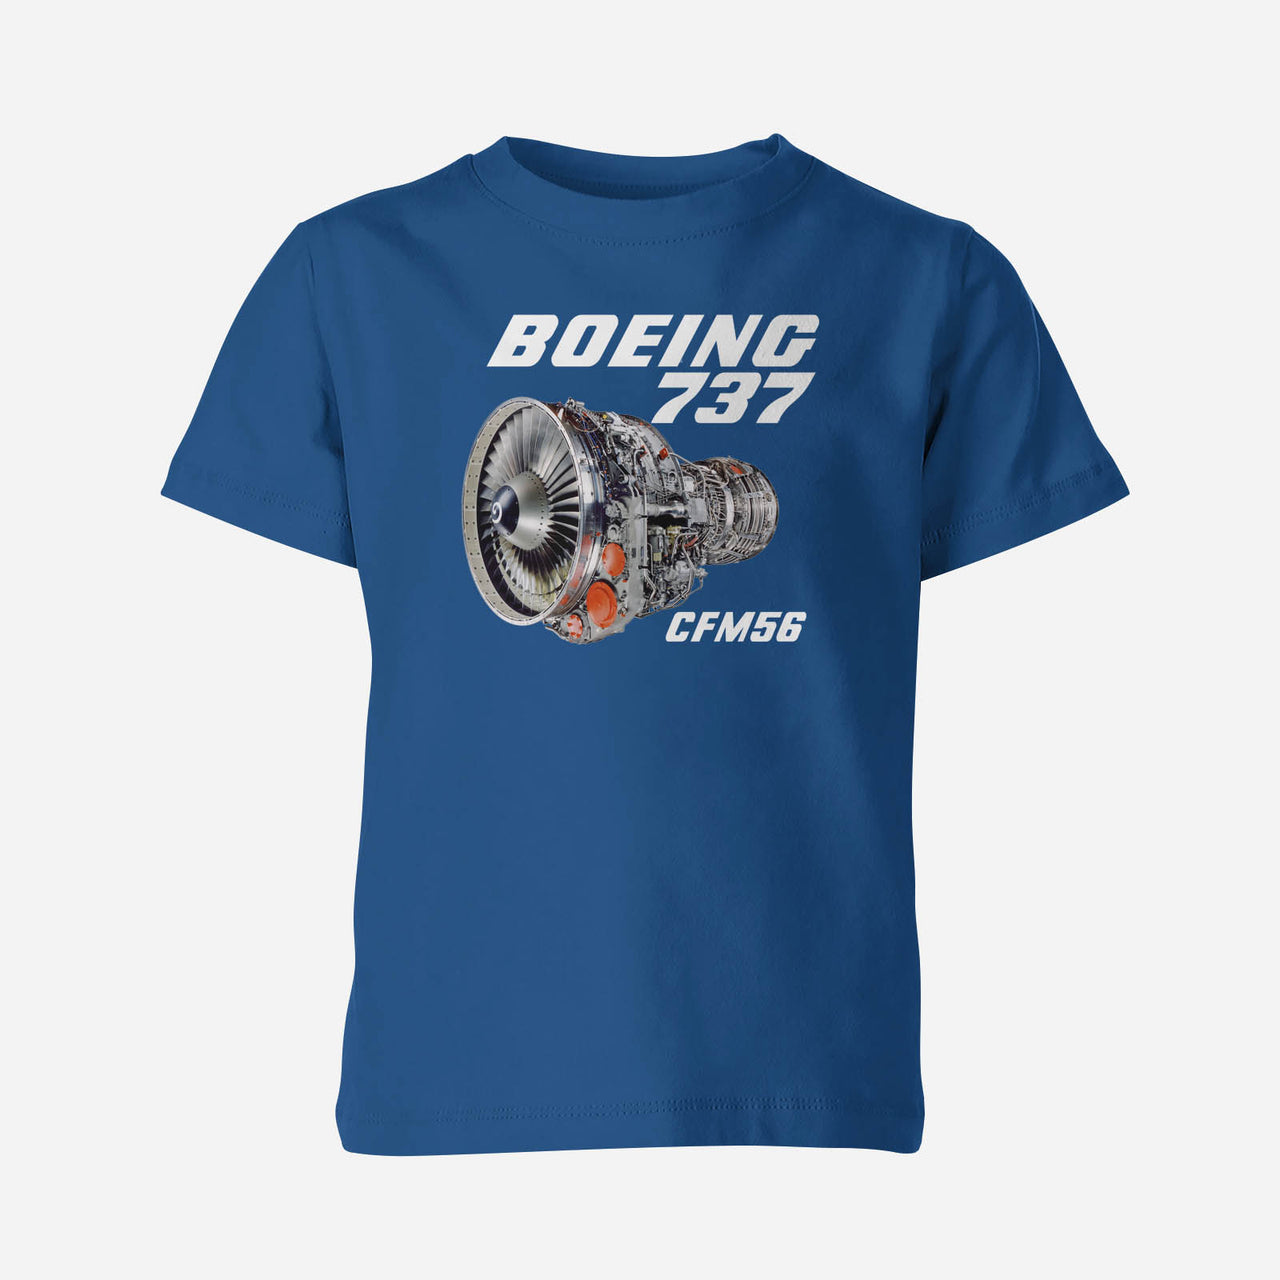 Boeing 737 Engine & CFM56 Engine Designed Children T-Shirts